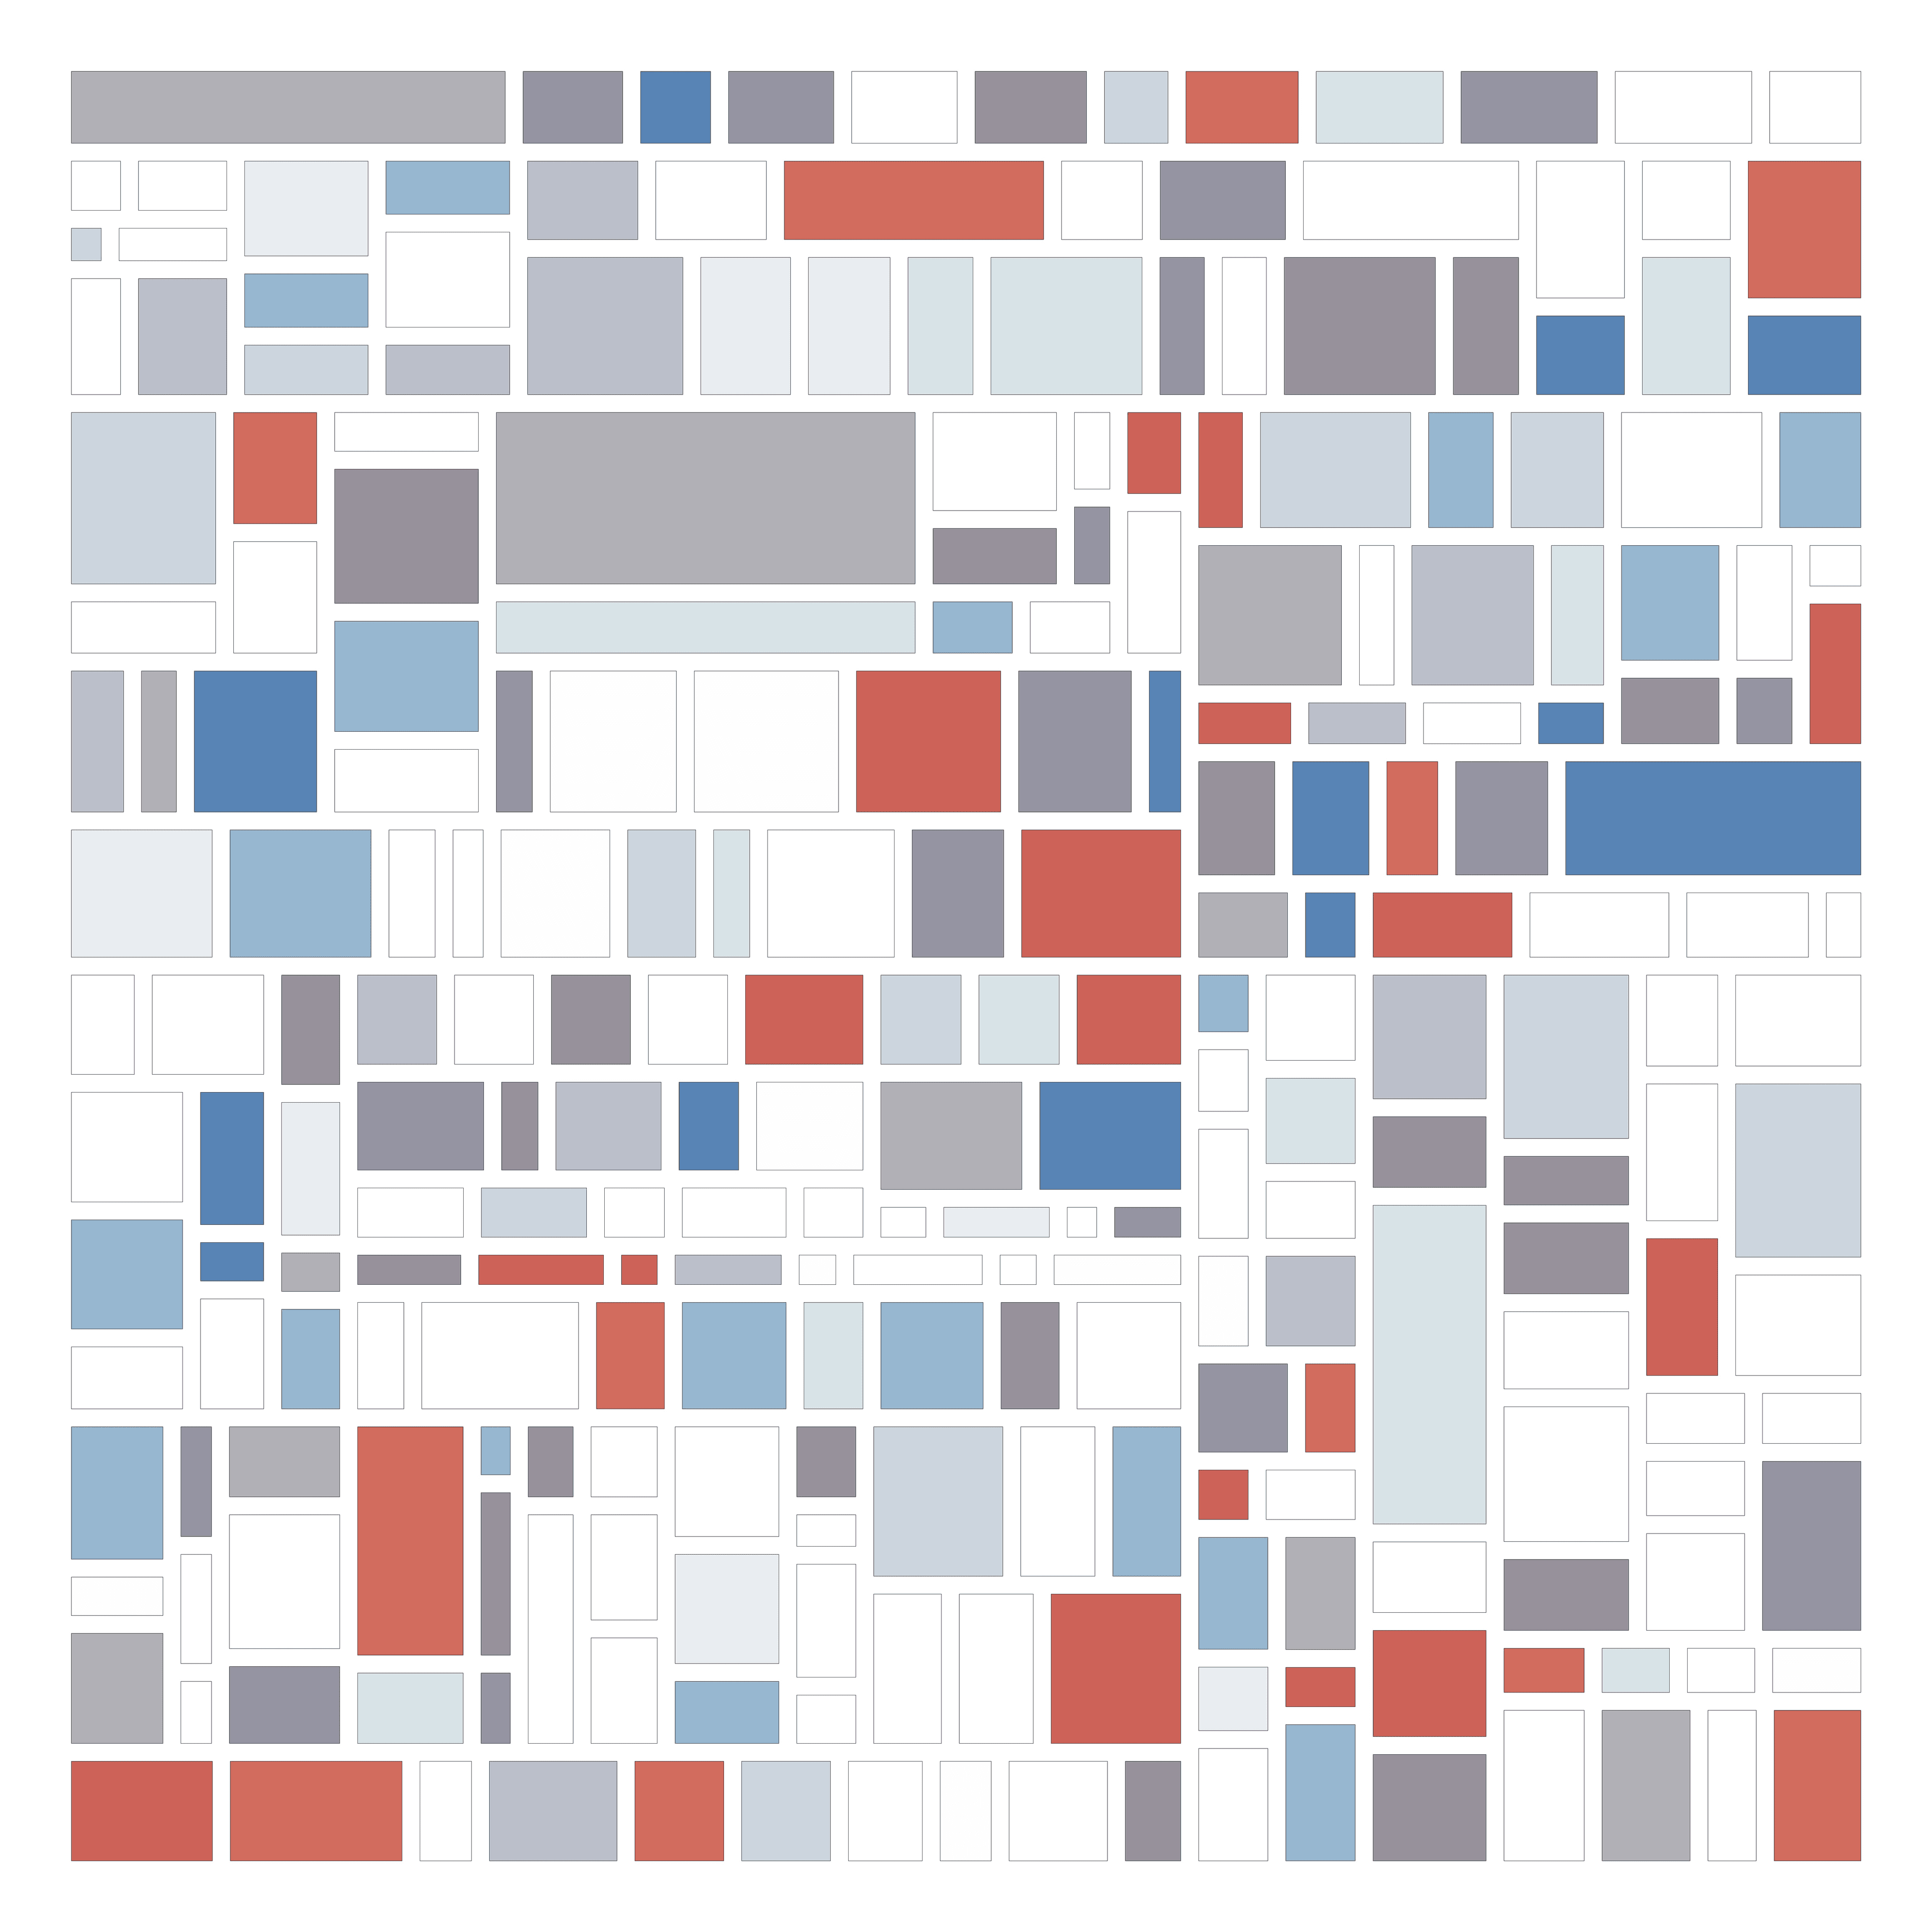  '256b' - Mondrian Inspired - MooniTooki Project - Art from Crypto Data